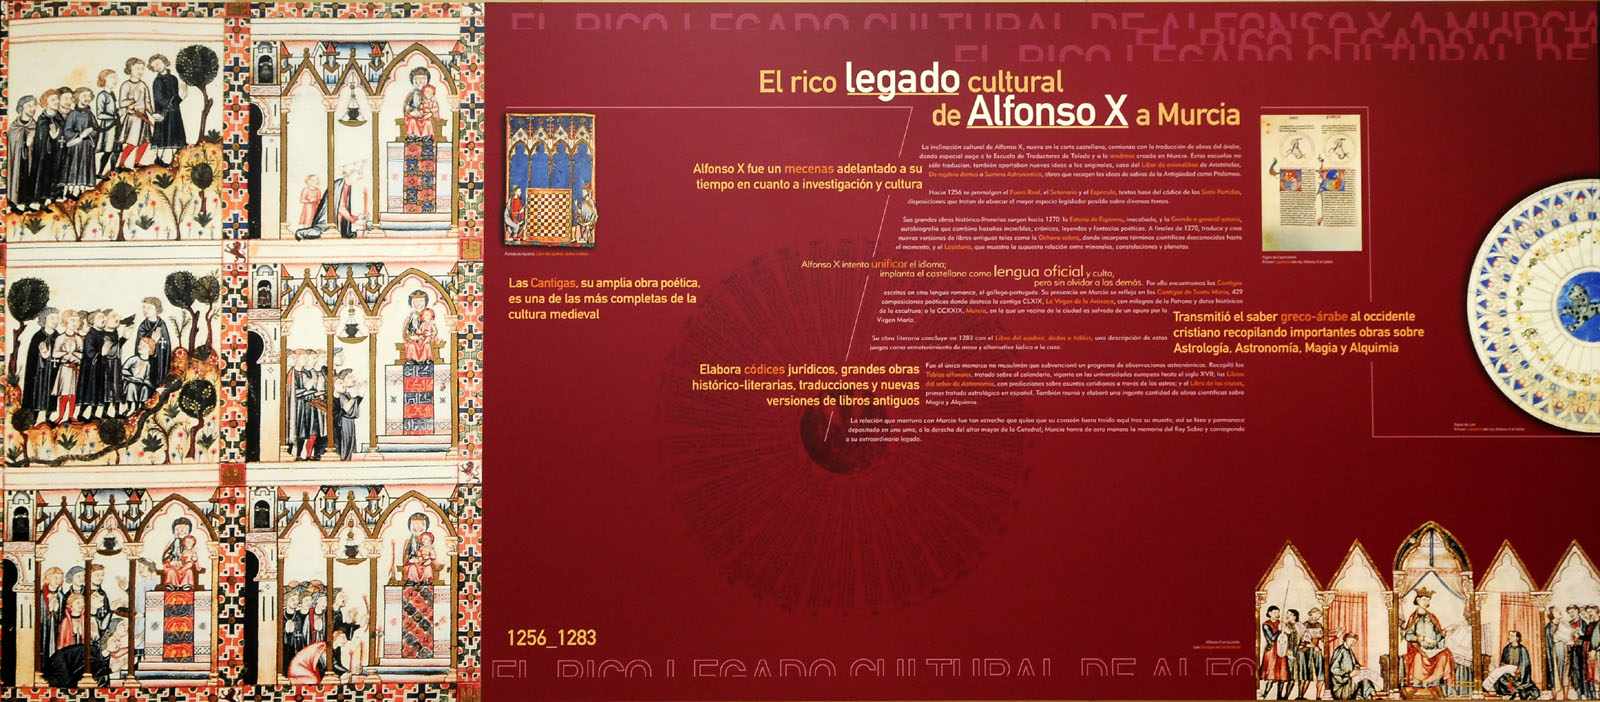 El rico legado cultural de Alfonso X a Murcia